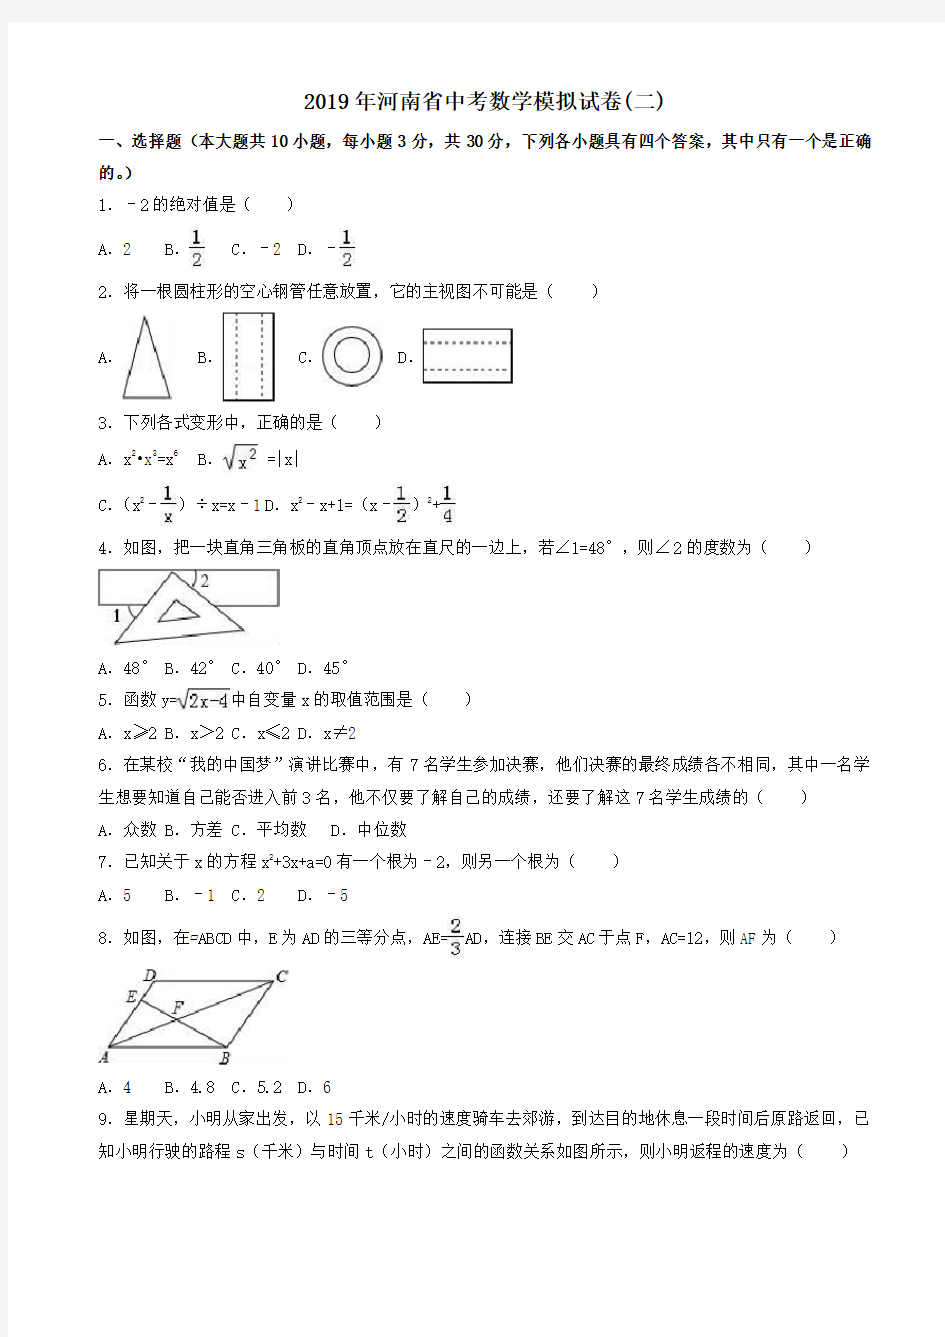 【真题】2019年河南省中考数学模拟试卷(二)(有答案)